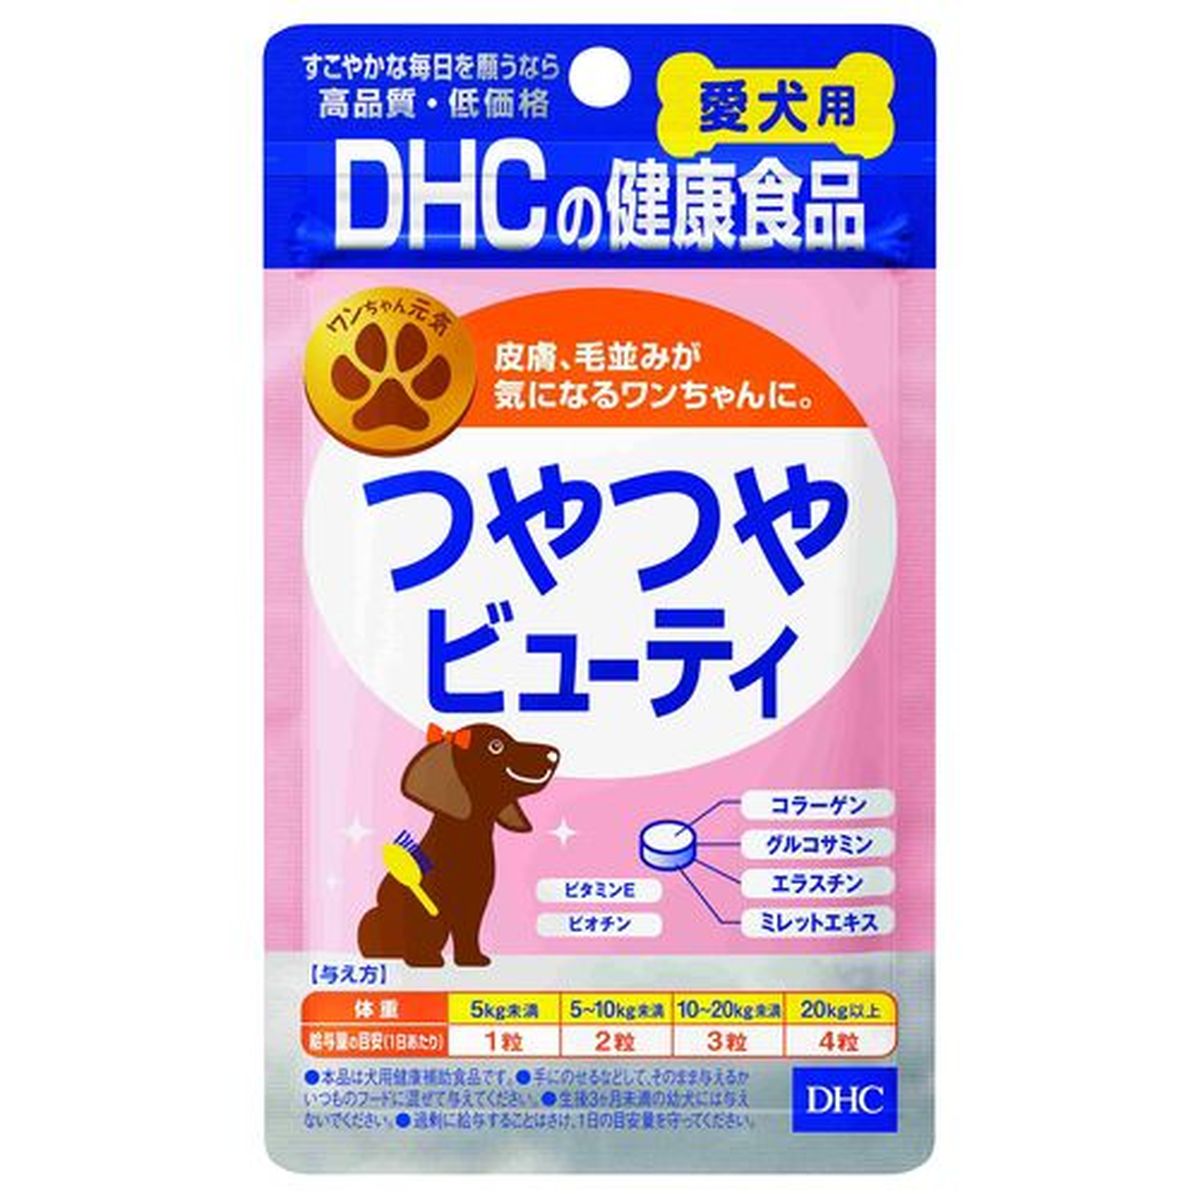 DHC愛犬用ツヤツヤビューティ 60粒×30